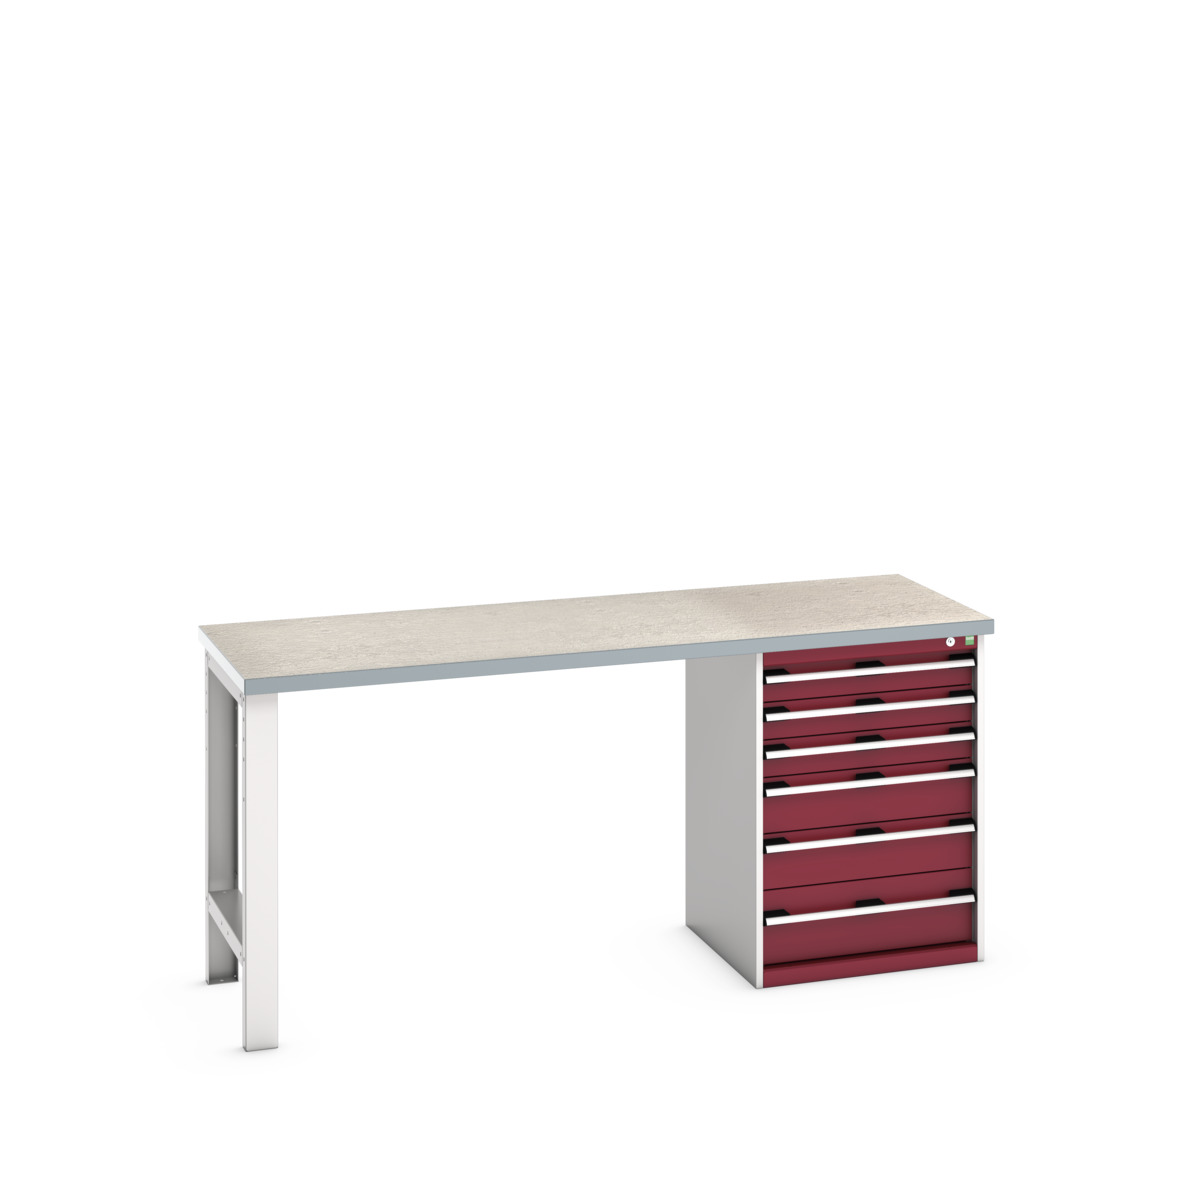 41003495.24V - cubio pedestal bench (lino)